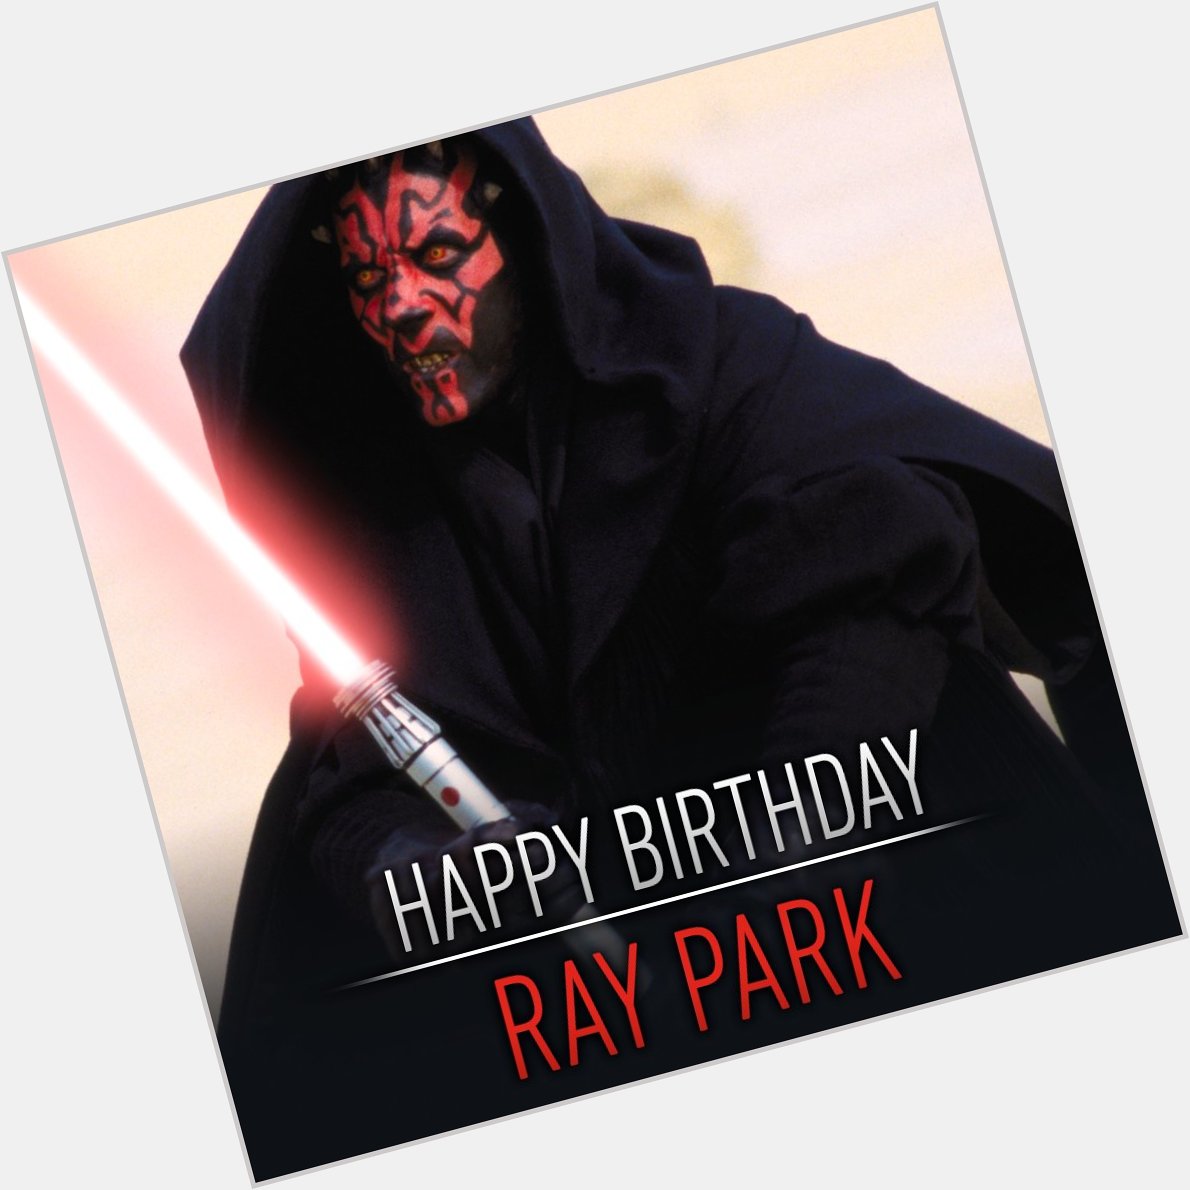 De man achter de angstaanjagende Darth Maul is vandaag jarig. Happy birthday Ray Park! 